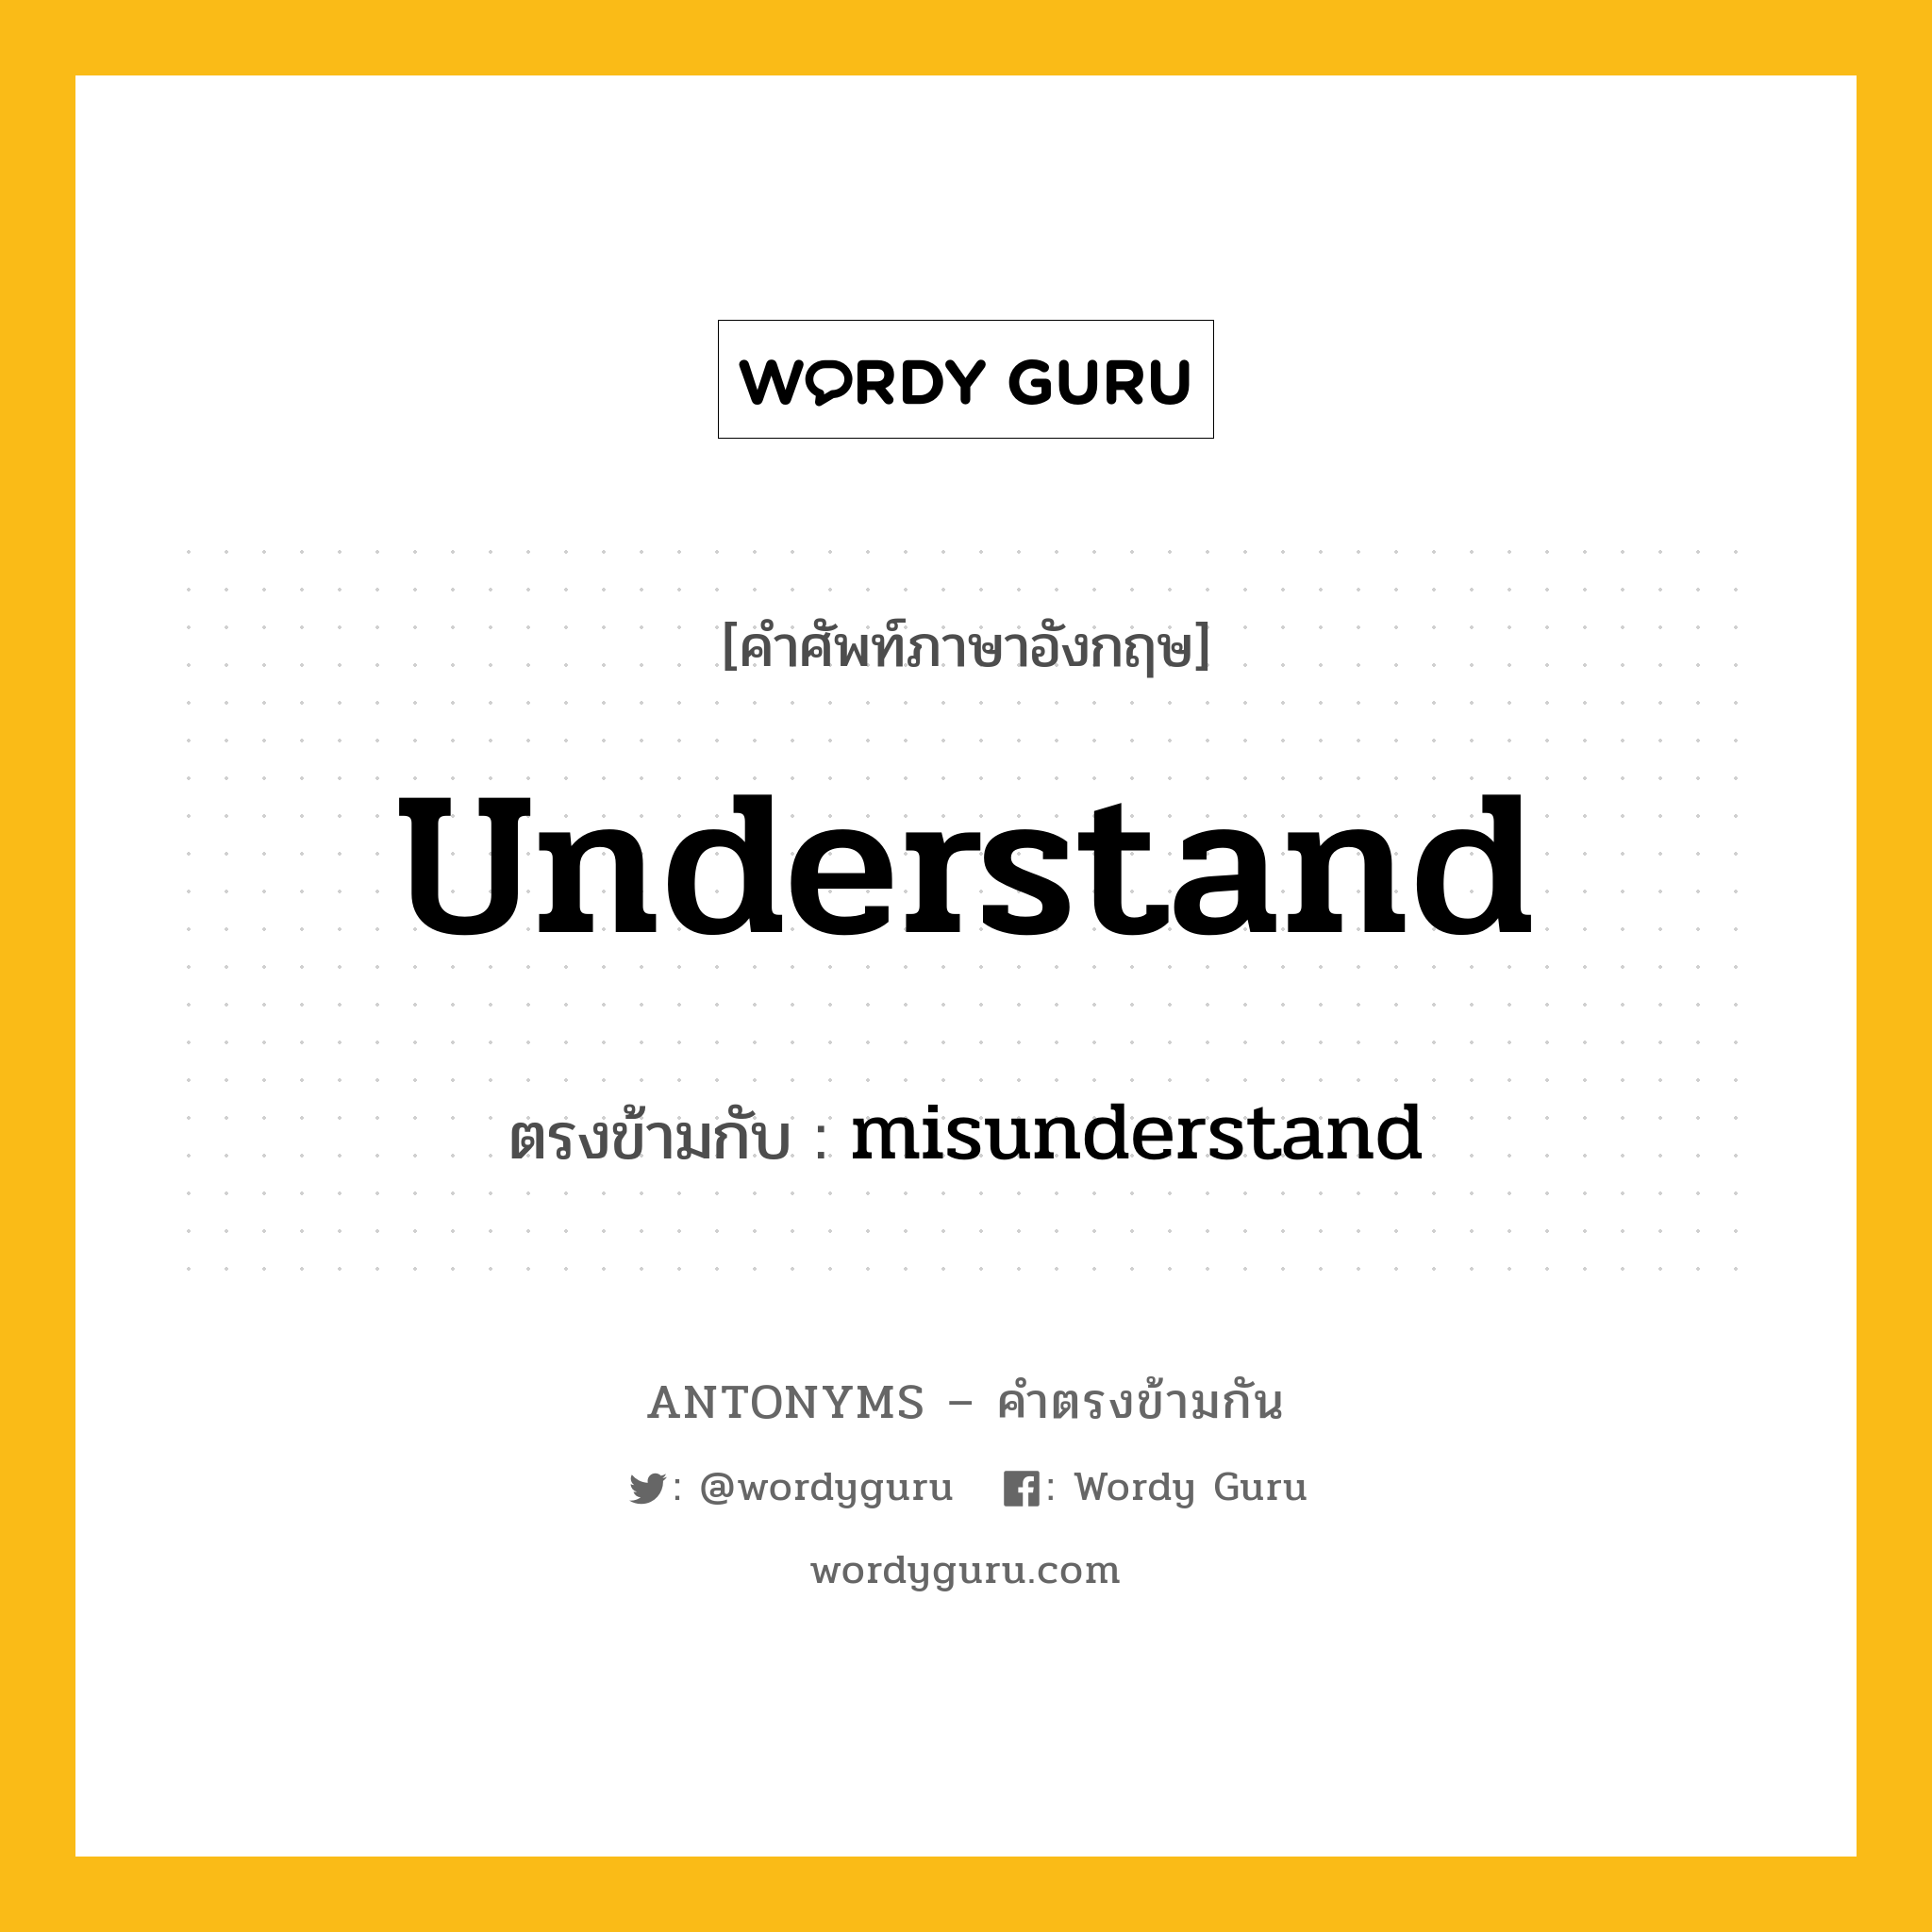 understand เป็นคำตรงข้ามกับคำไหนบ้าง?, คำศัพท์ภาษาอังกฤษ understand ตรงข้ามกับ misunderstand หมวด misunderstand